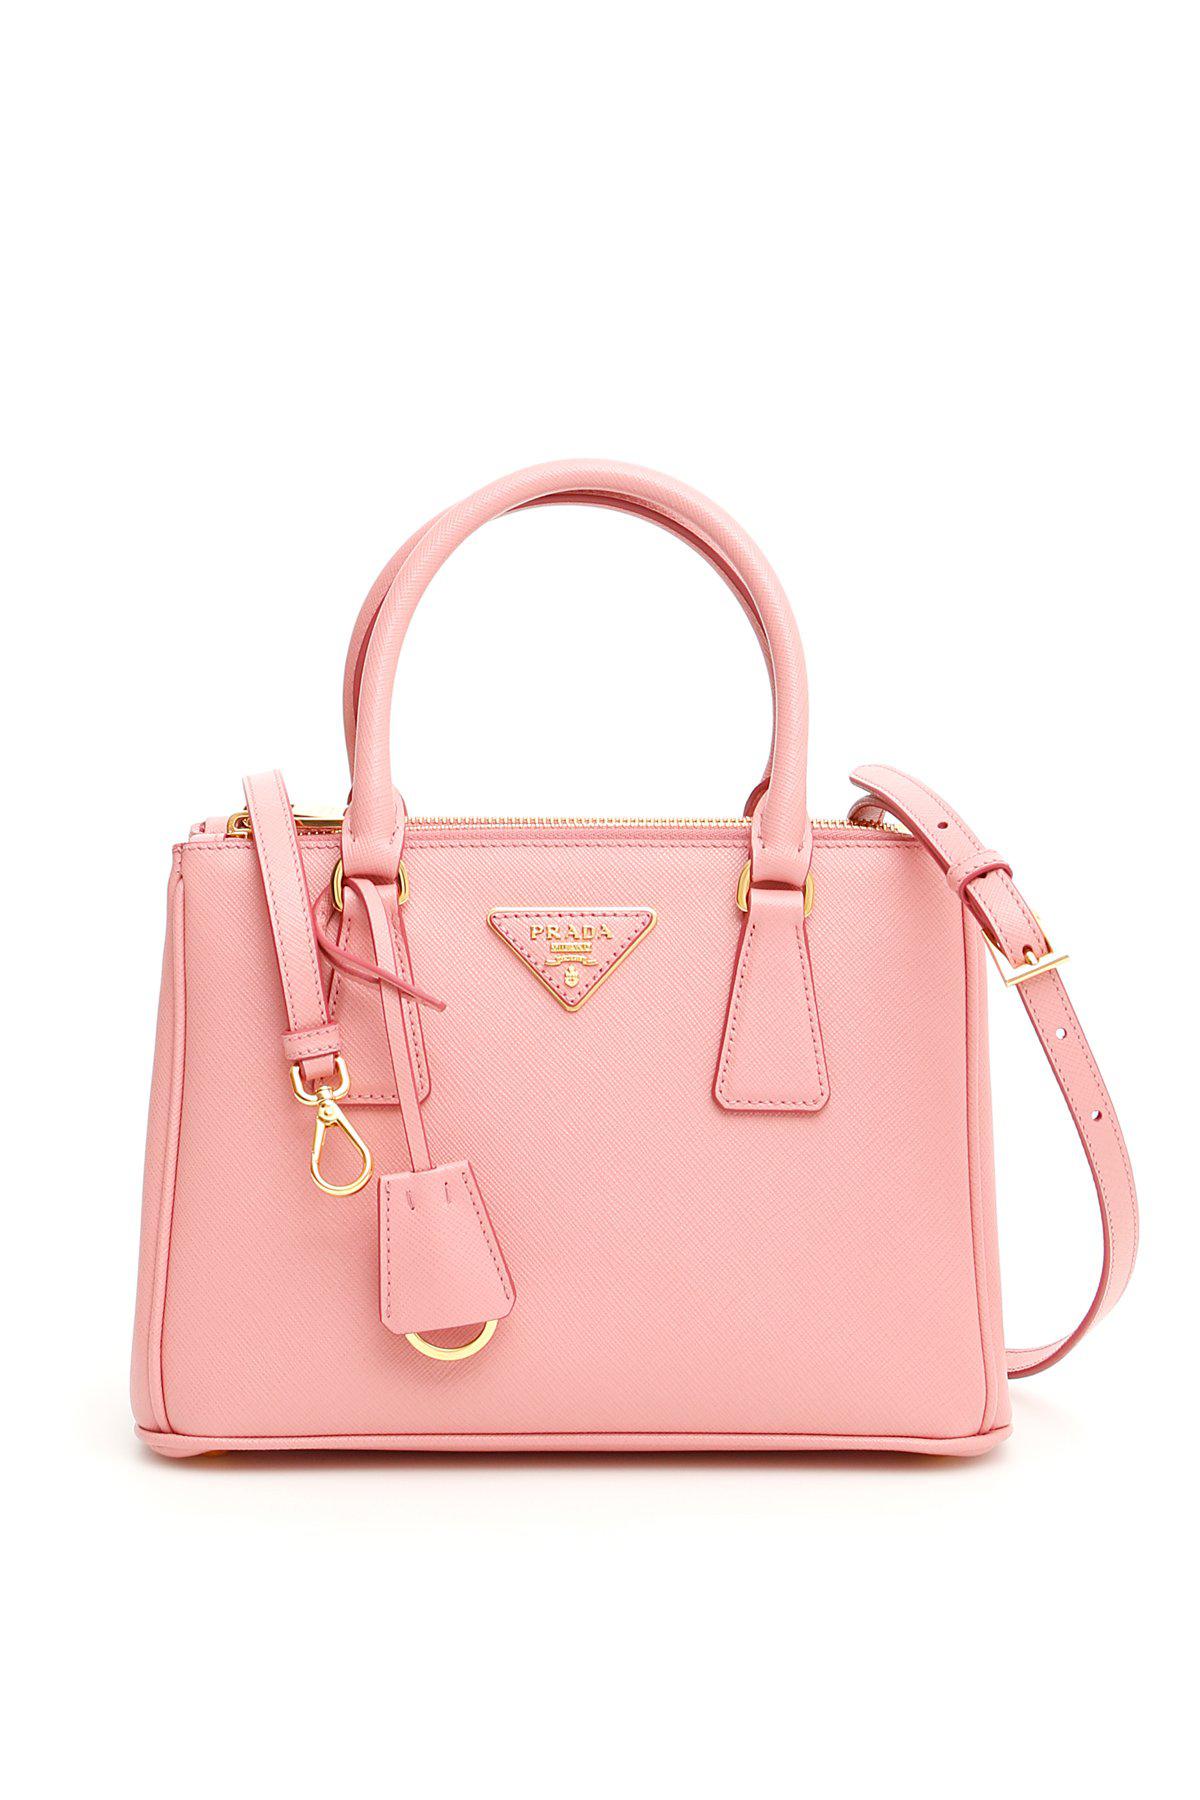 Prada Mini Galleria Tote Bag in Pink